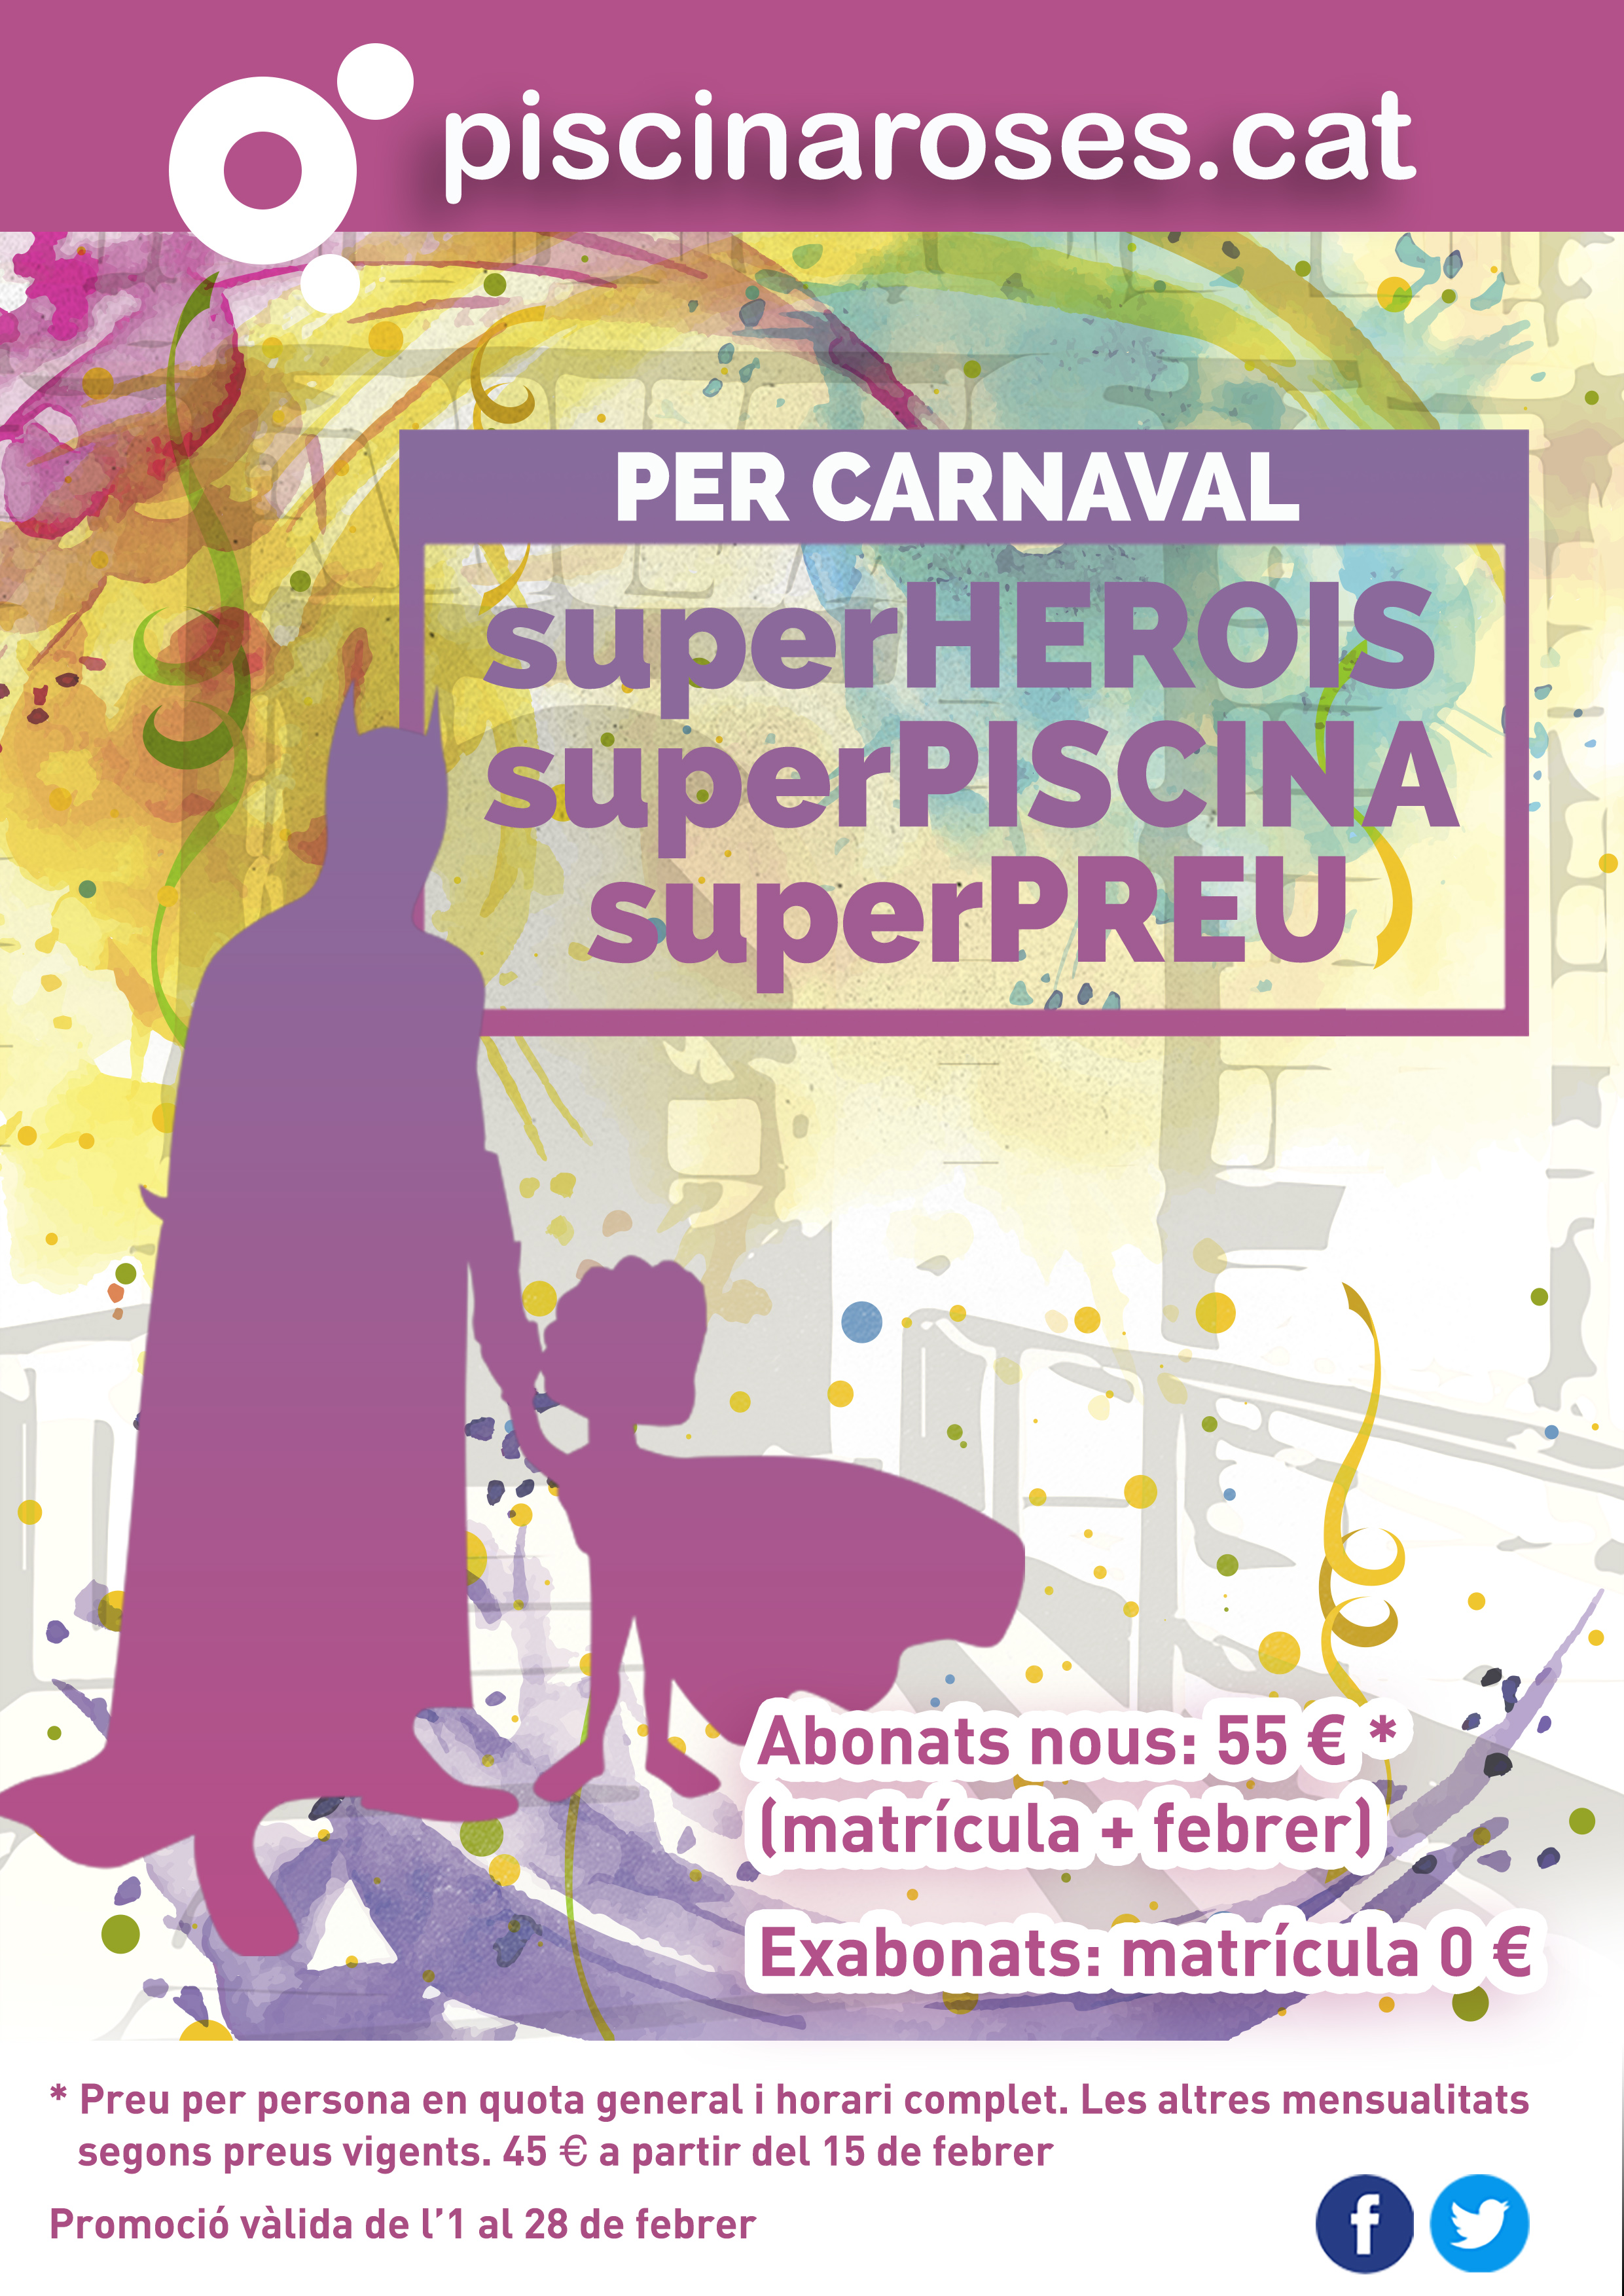 Pel Carnaval de Roses… superHEROIS, superPISCINA, superPREU